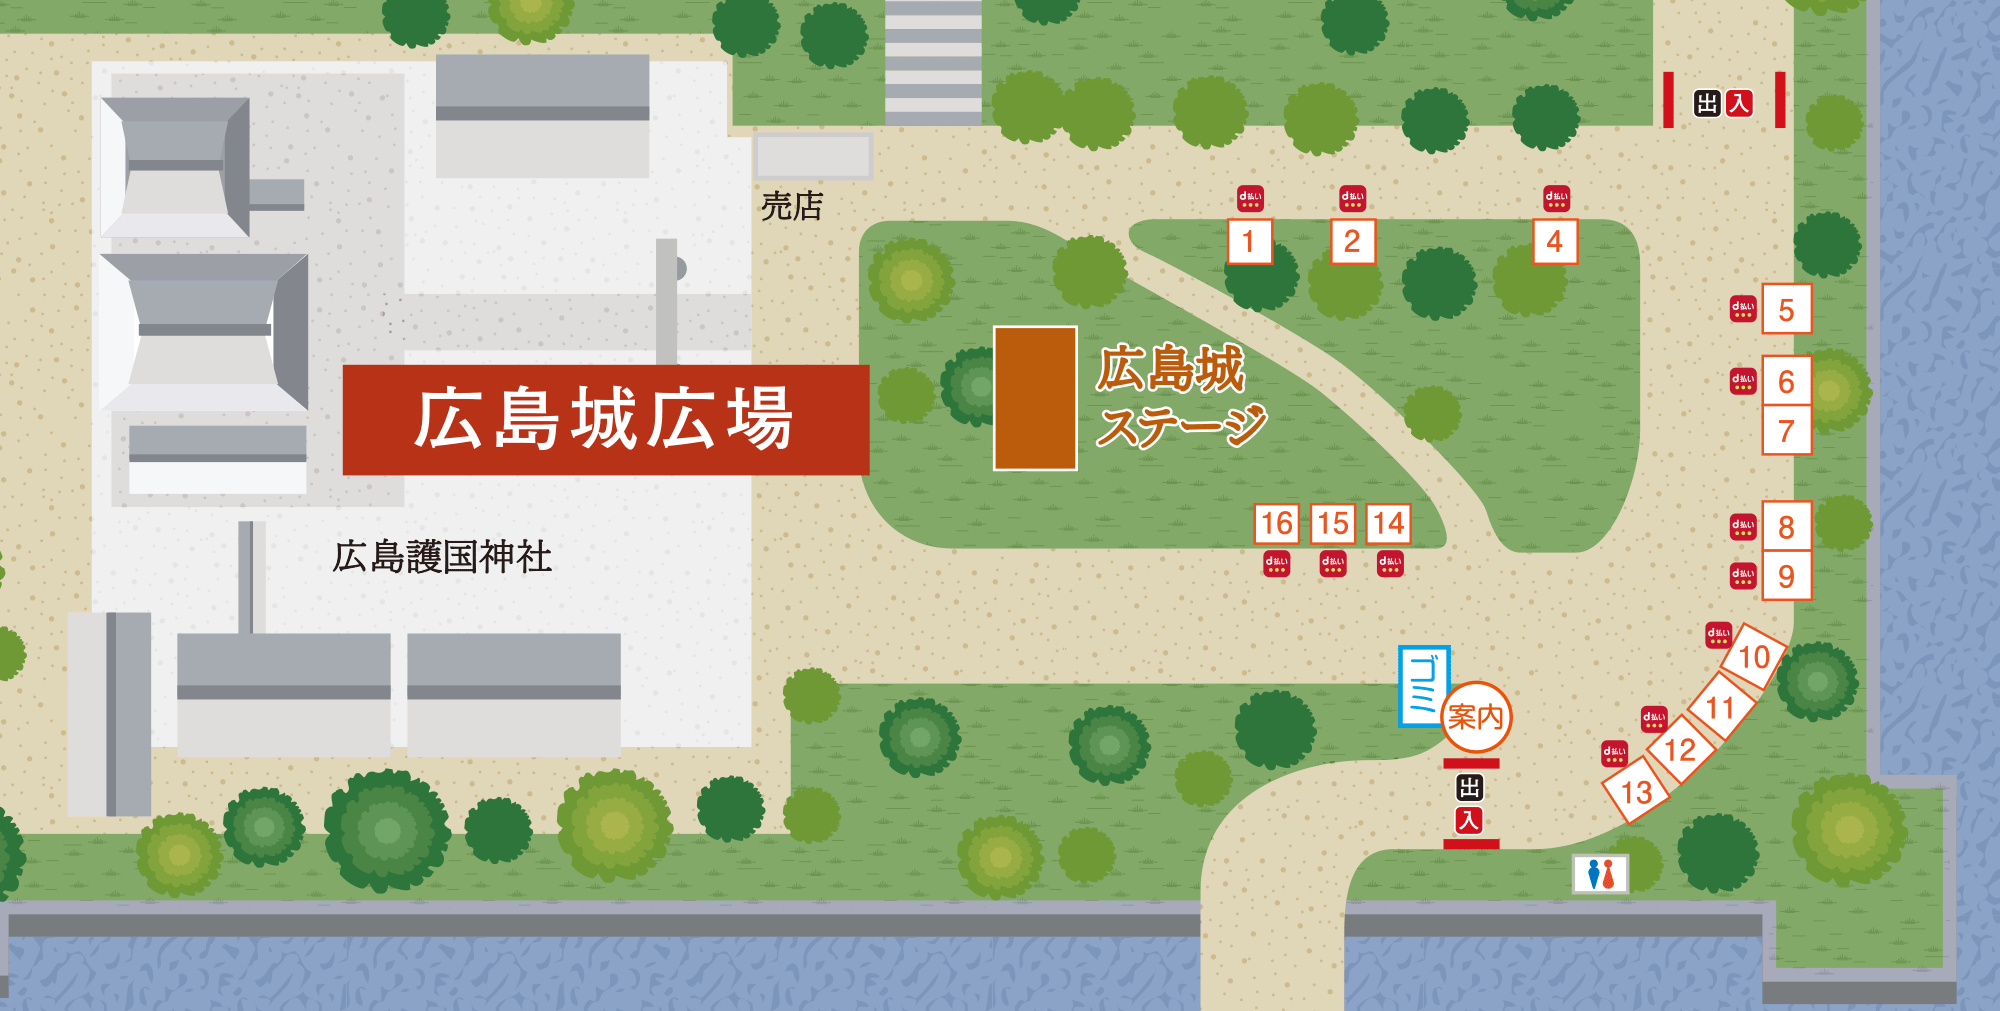 広島城広場